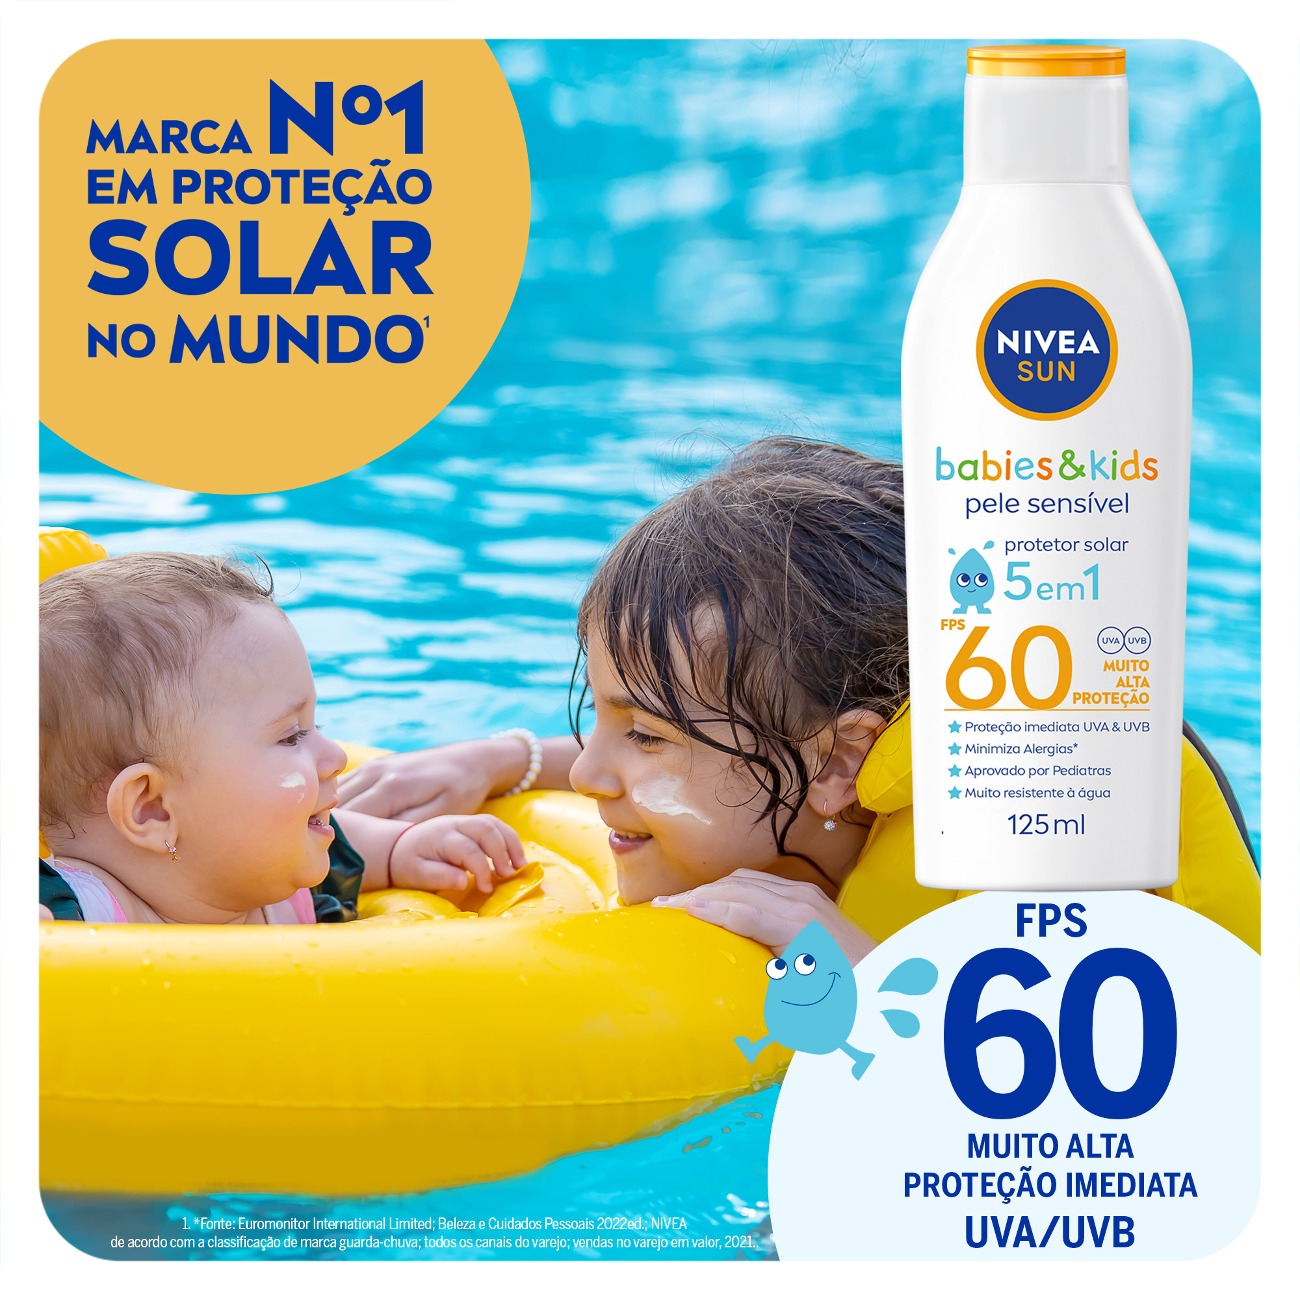 Protetor Solar NIVEA SUN Kids & Babies Pele Sensvel FPS60 125mL